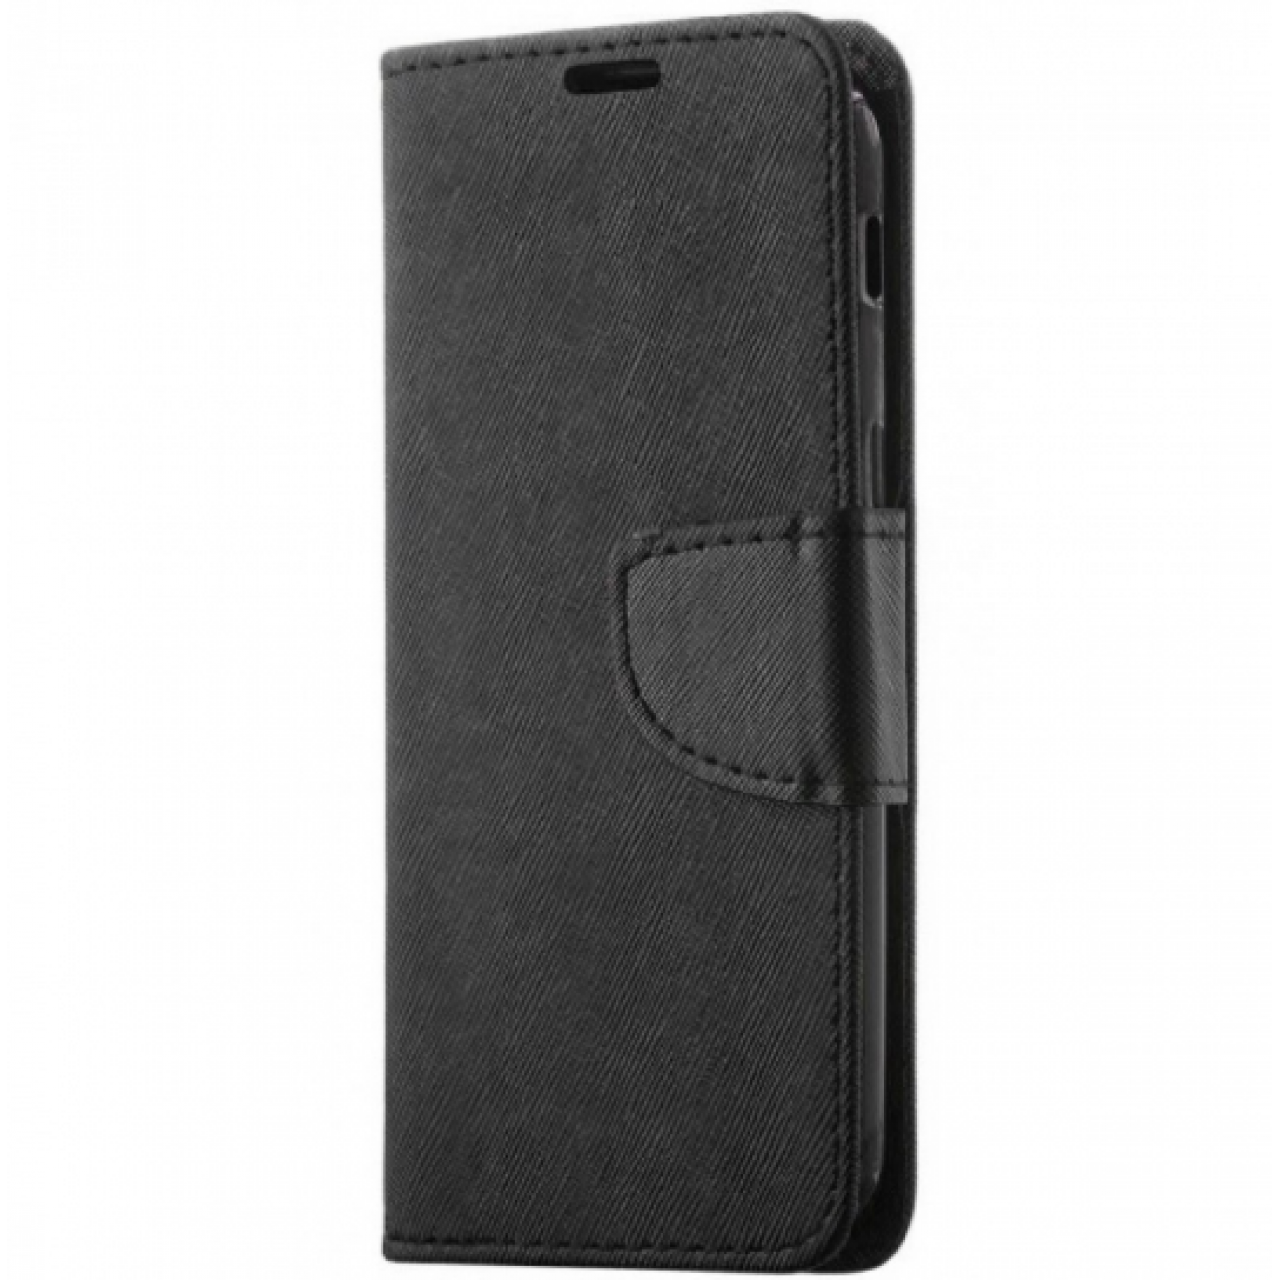 Θήκη Huawei P20 PU Leather Πορτοφόλι flip Fancy Diary - 4104 - Μαύρο - OEM